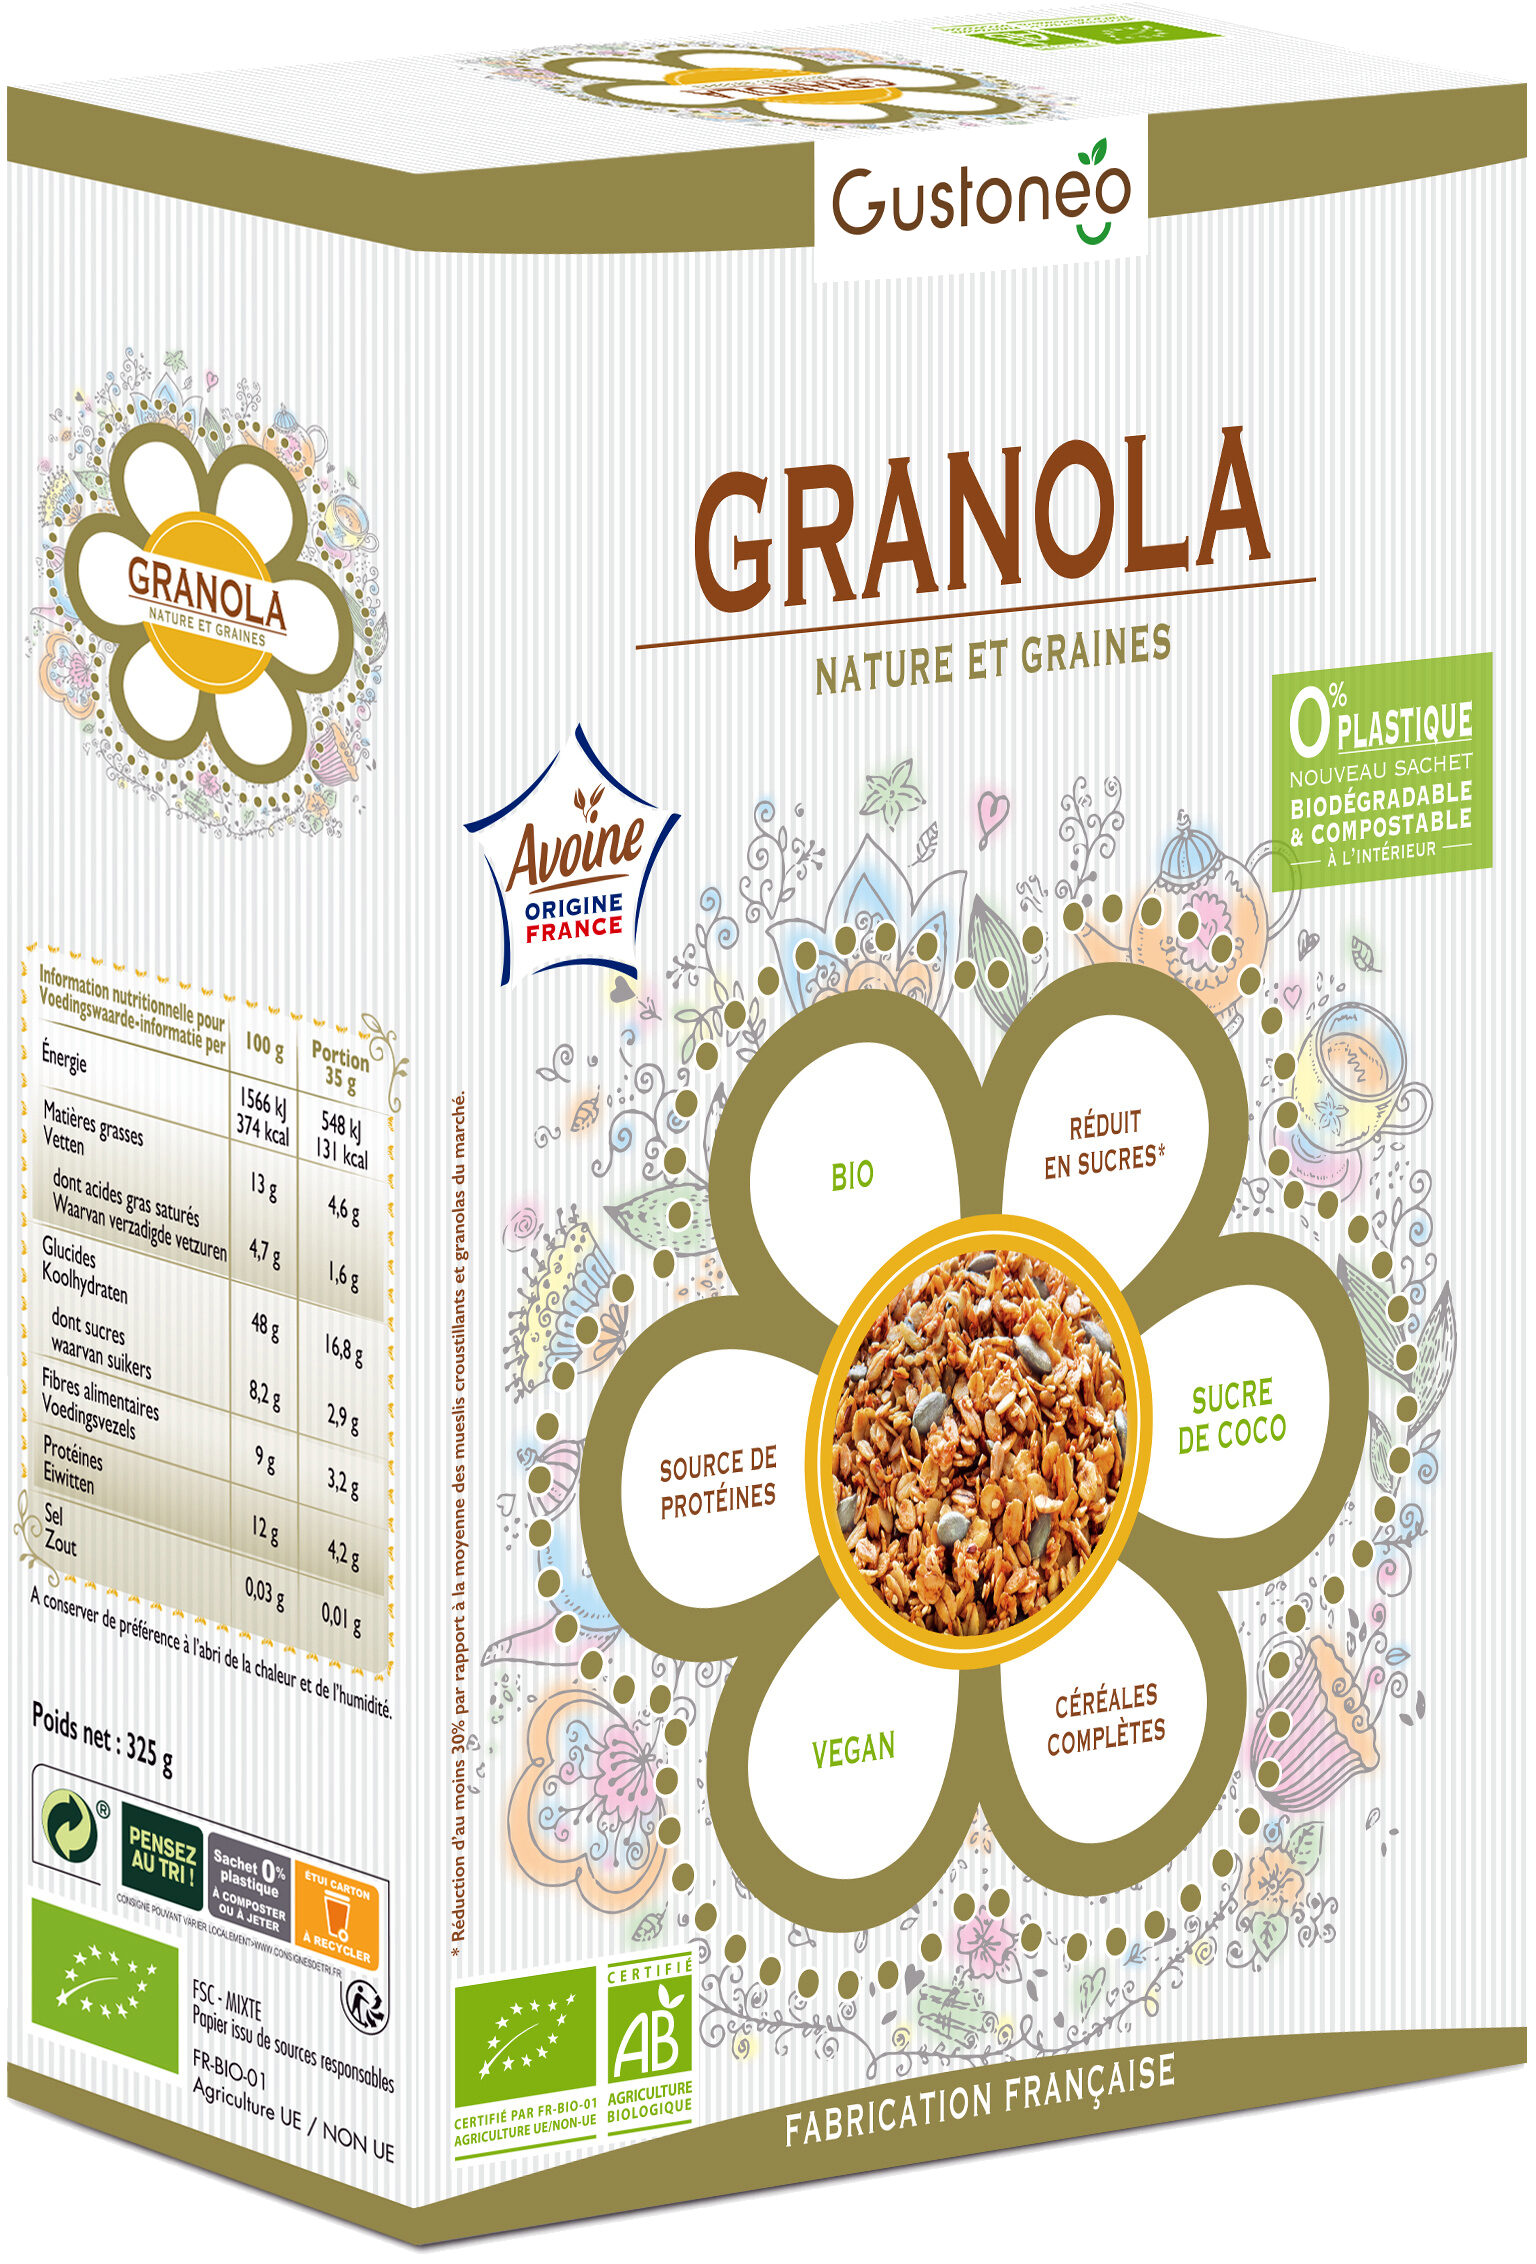 Granola bio Nature & graines - Product - fr